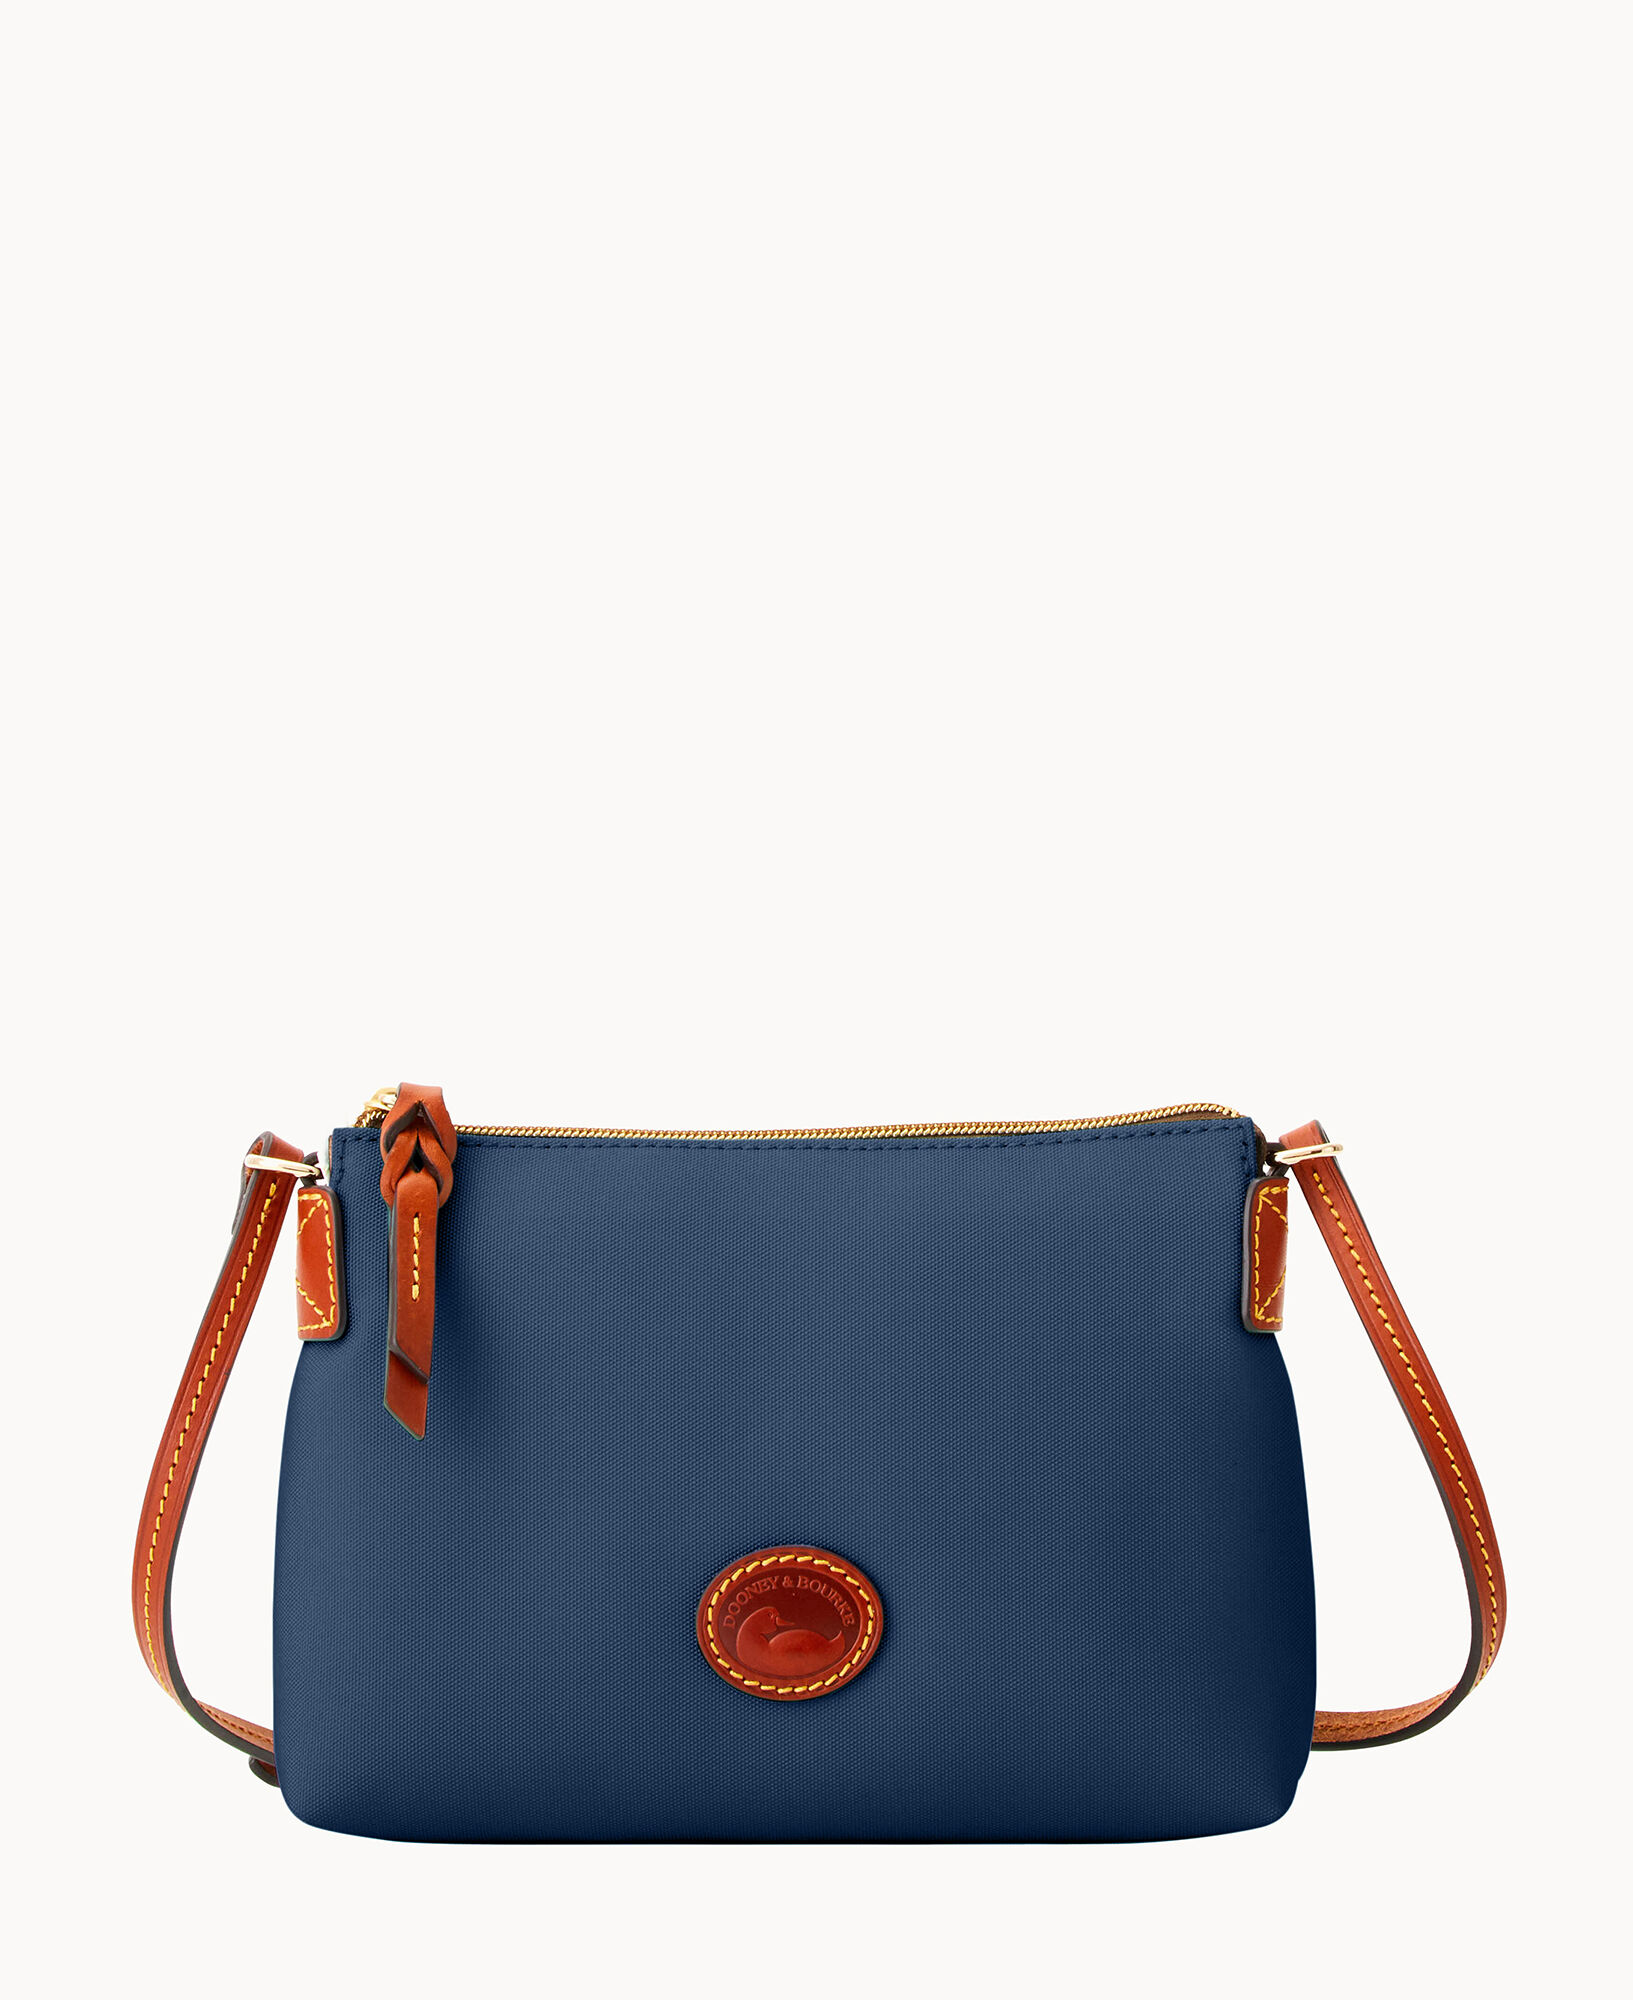 Dooney & Bourke Nylon Crossbody Pouchette Bag in Light Blue - $45 - From  Beadsatbp